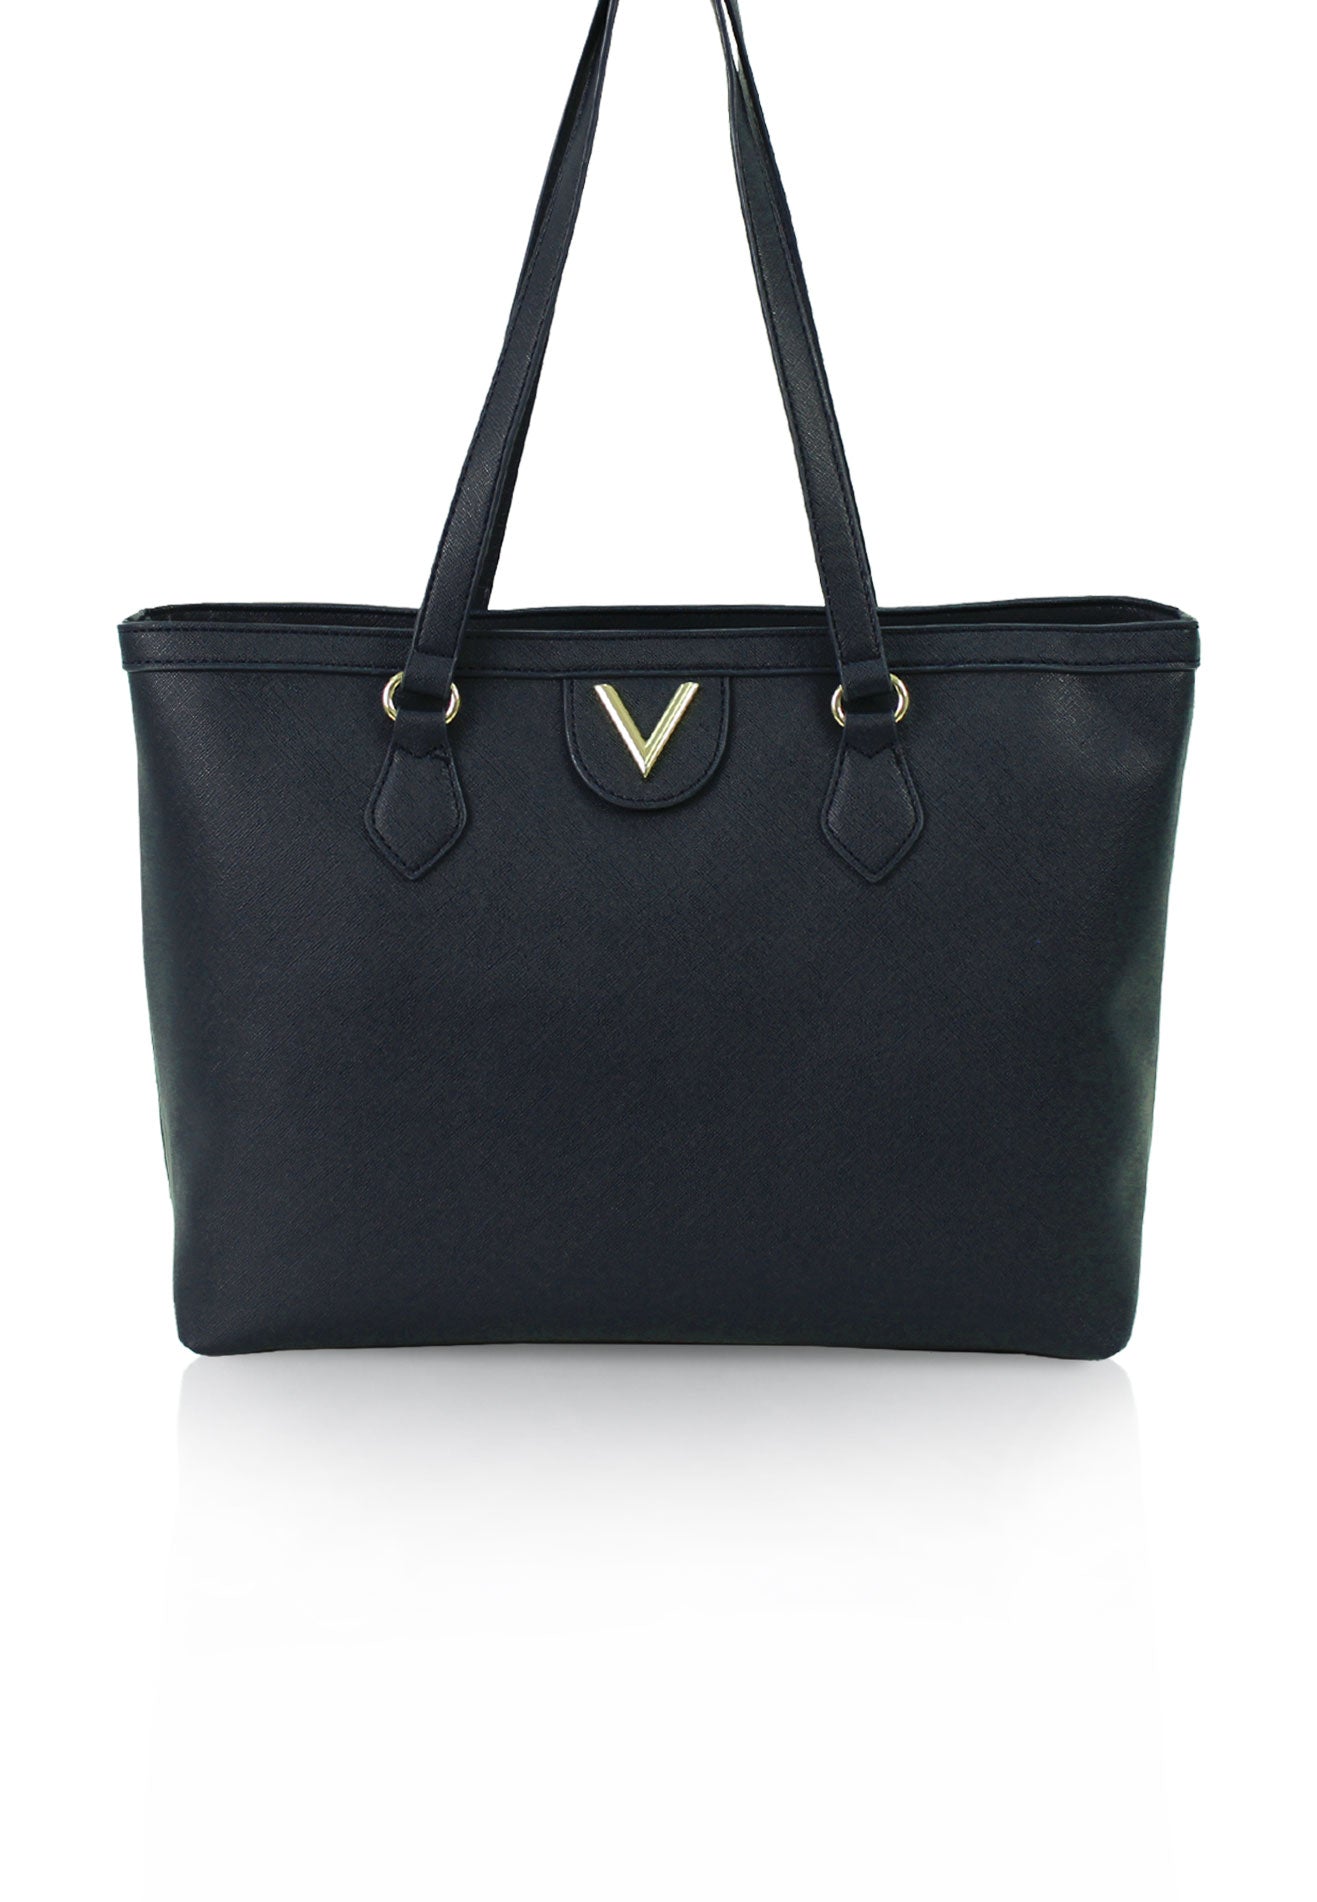 VOIR Iconic 'V' Large Tote Bag